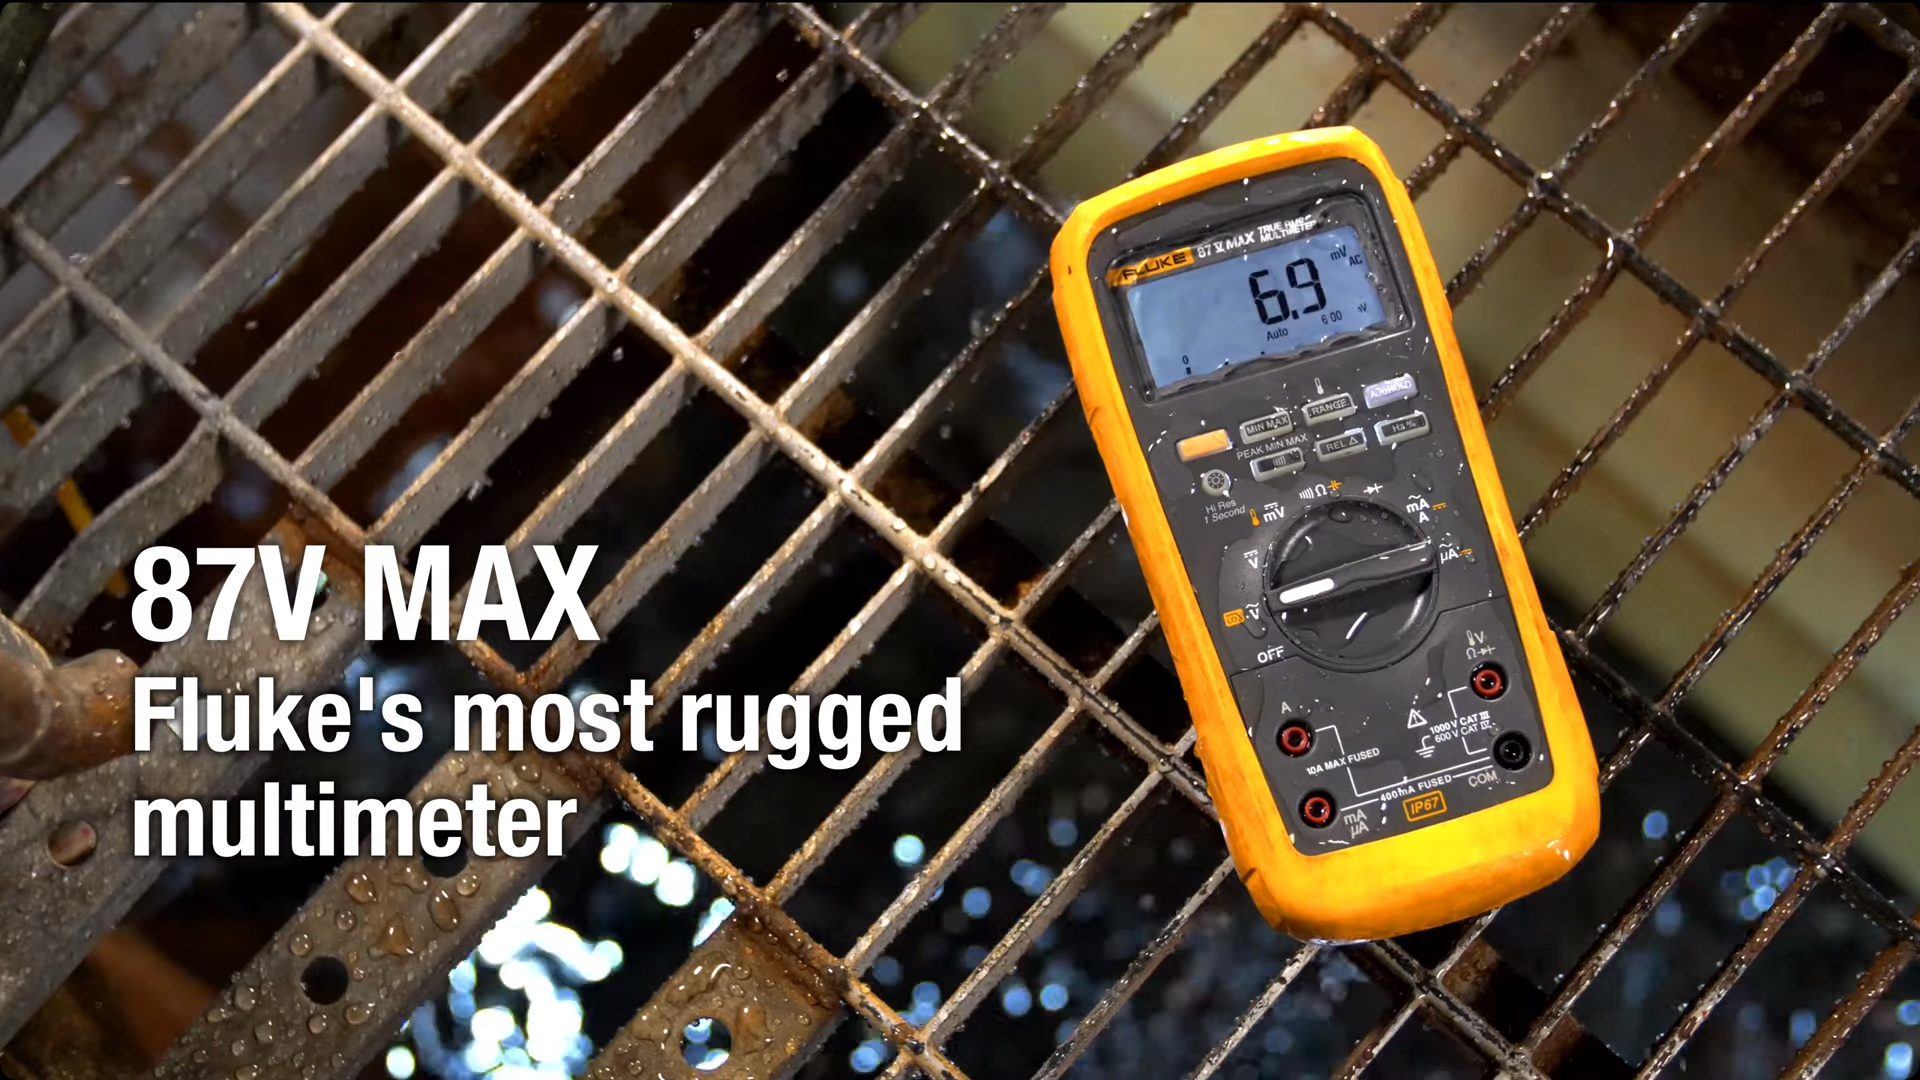 Fluke 87V Max True-RMS Digital Multimeter outside highlighting its ruggedness.